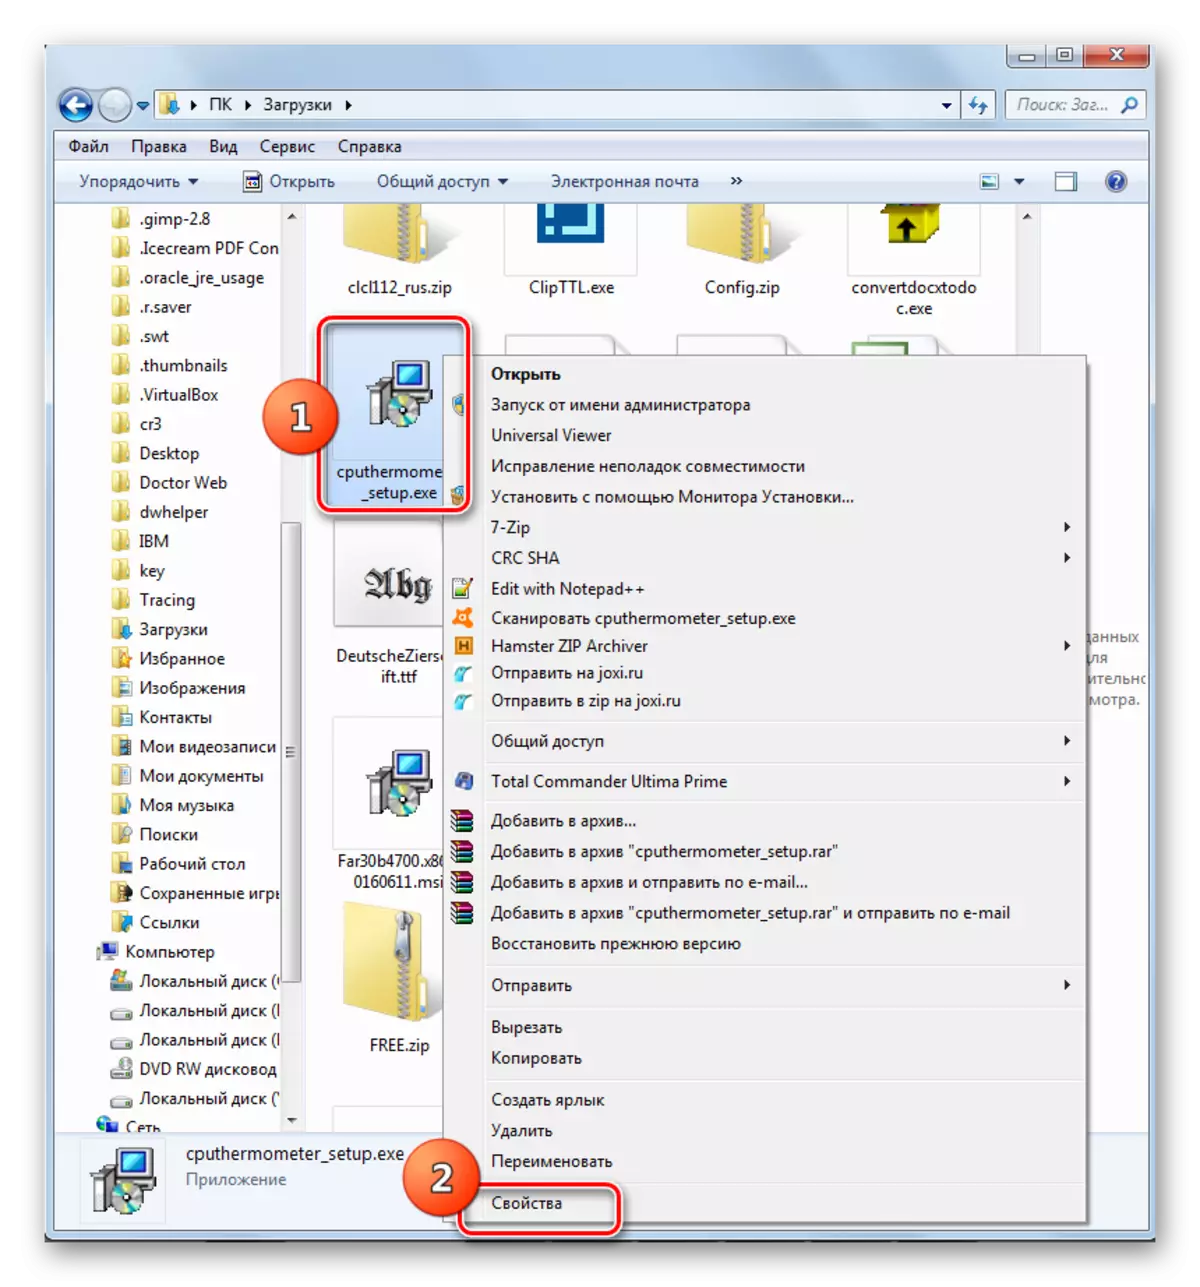 Chuyển sang các thuộc tính của tệp exe thông qua menu ngữ cảnh trong Explorer trong Windows 7